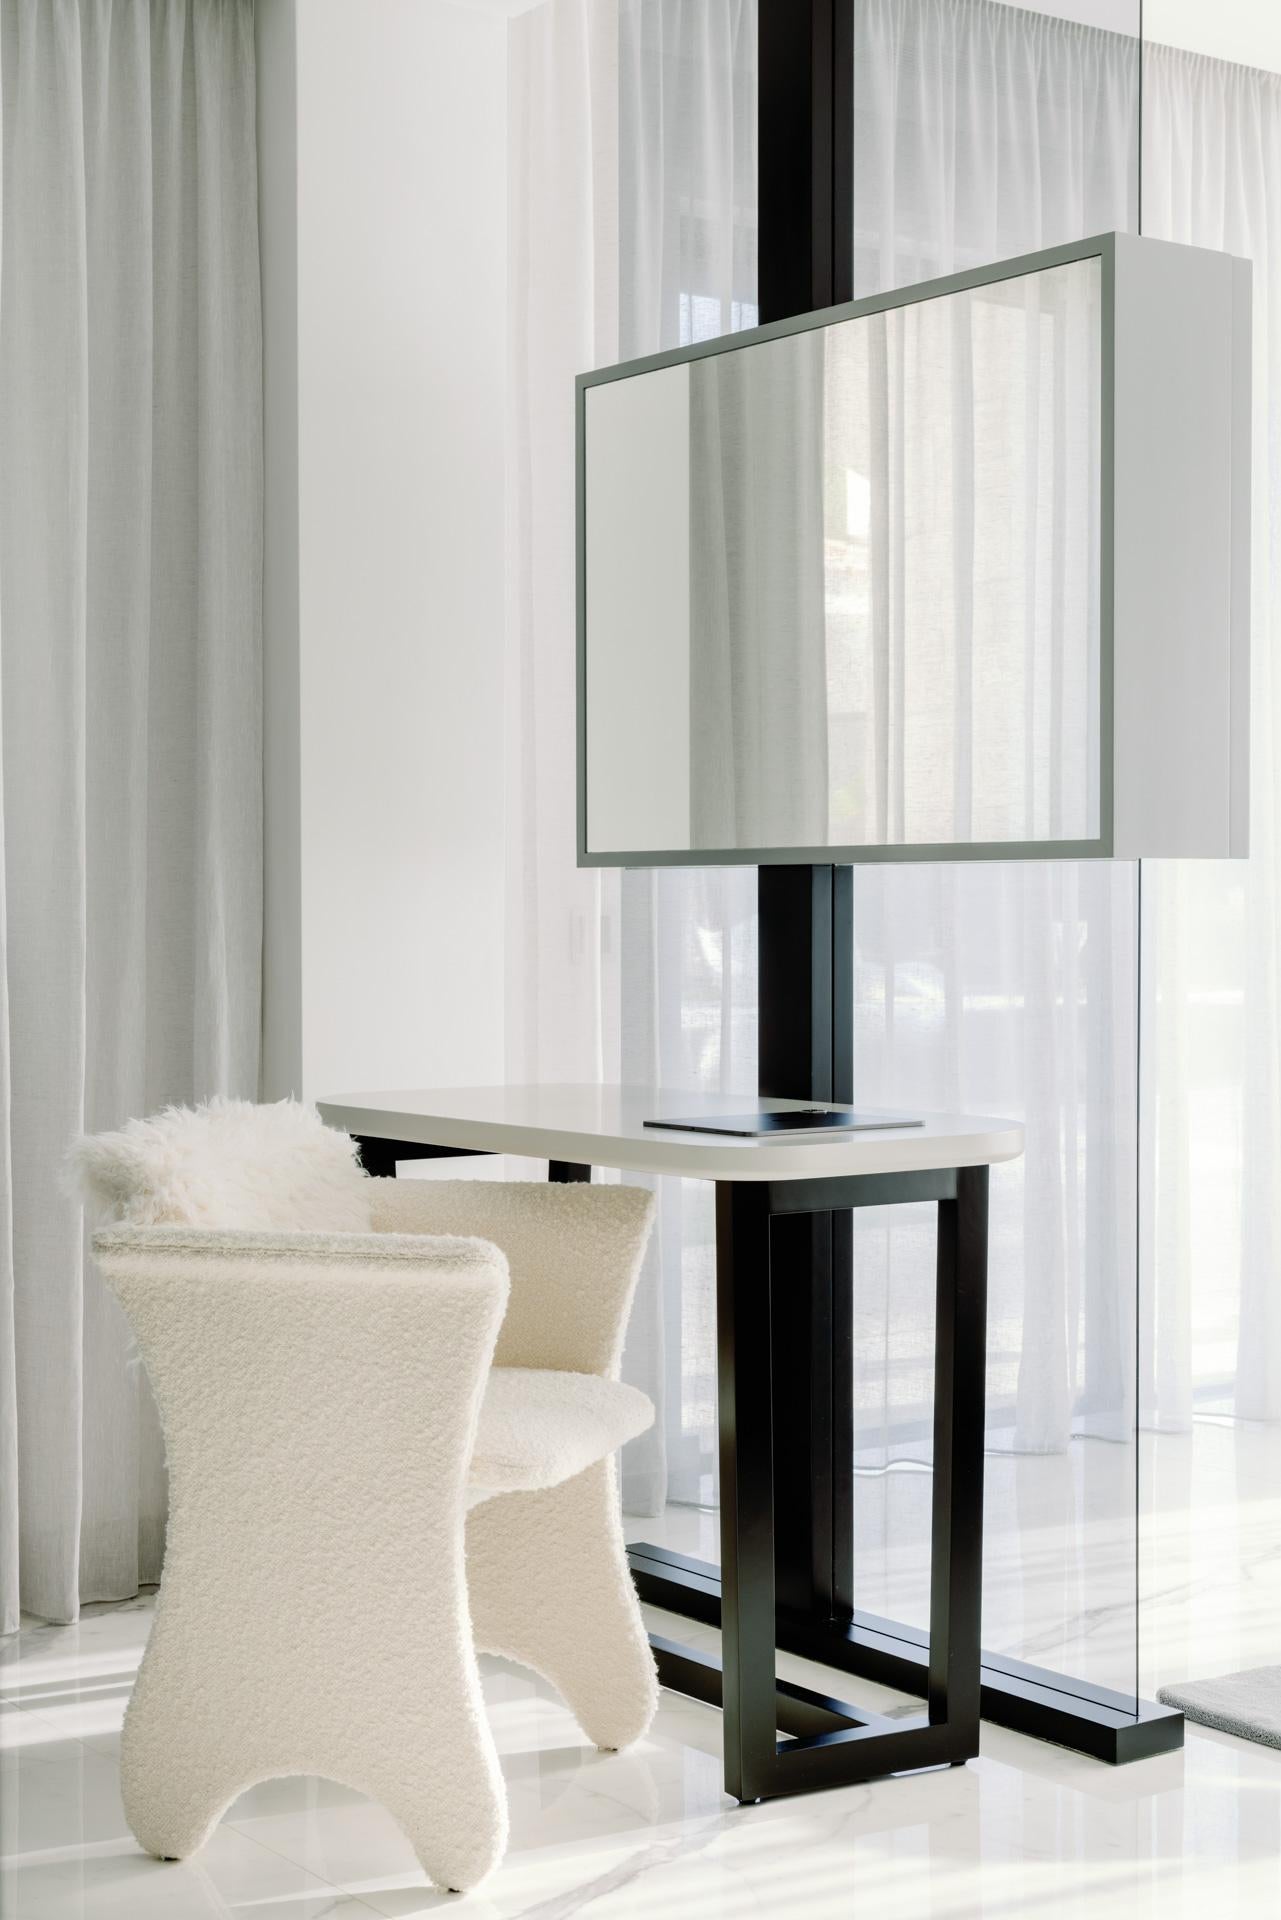 Greenapple Chair, Contemporary Collection, handgefertigt in Portugal - Europa von Greenapple.

Der Bouclé-Bürostuhl Timeless wurde so entworfen und gefertigt, dass er den Lauf der Zeit überdauert und ein Leben lang als Begleiter für Wachstum und